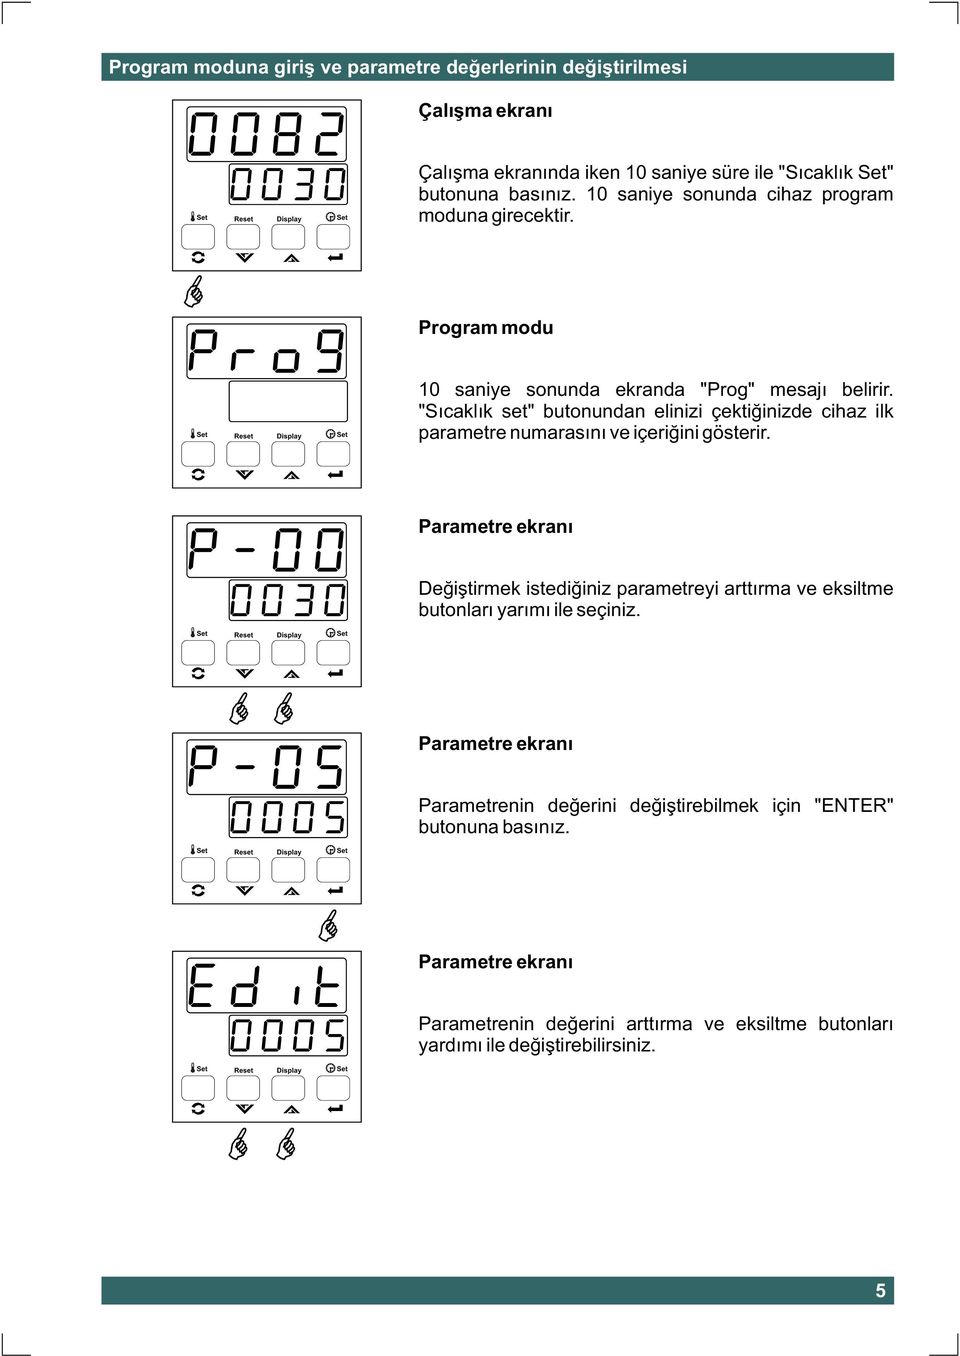 "Sýcaklýk set" butonundan elinizi çektiðinizde cihaz ilk parametre numarasýný ve içeriðini gösterir.